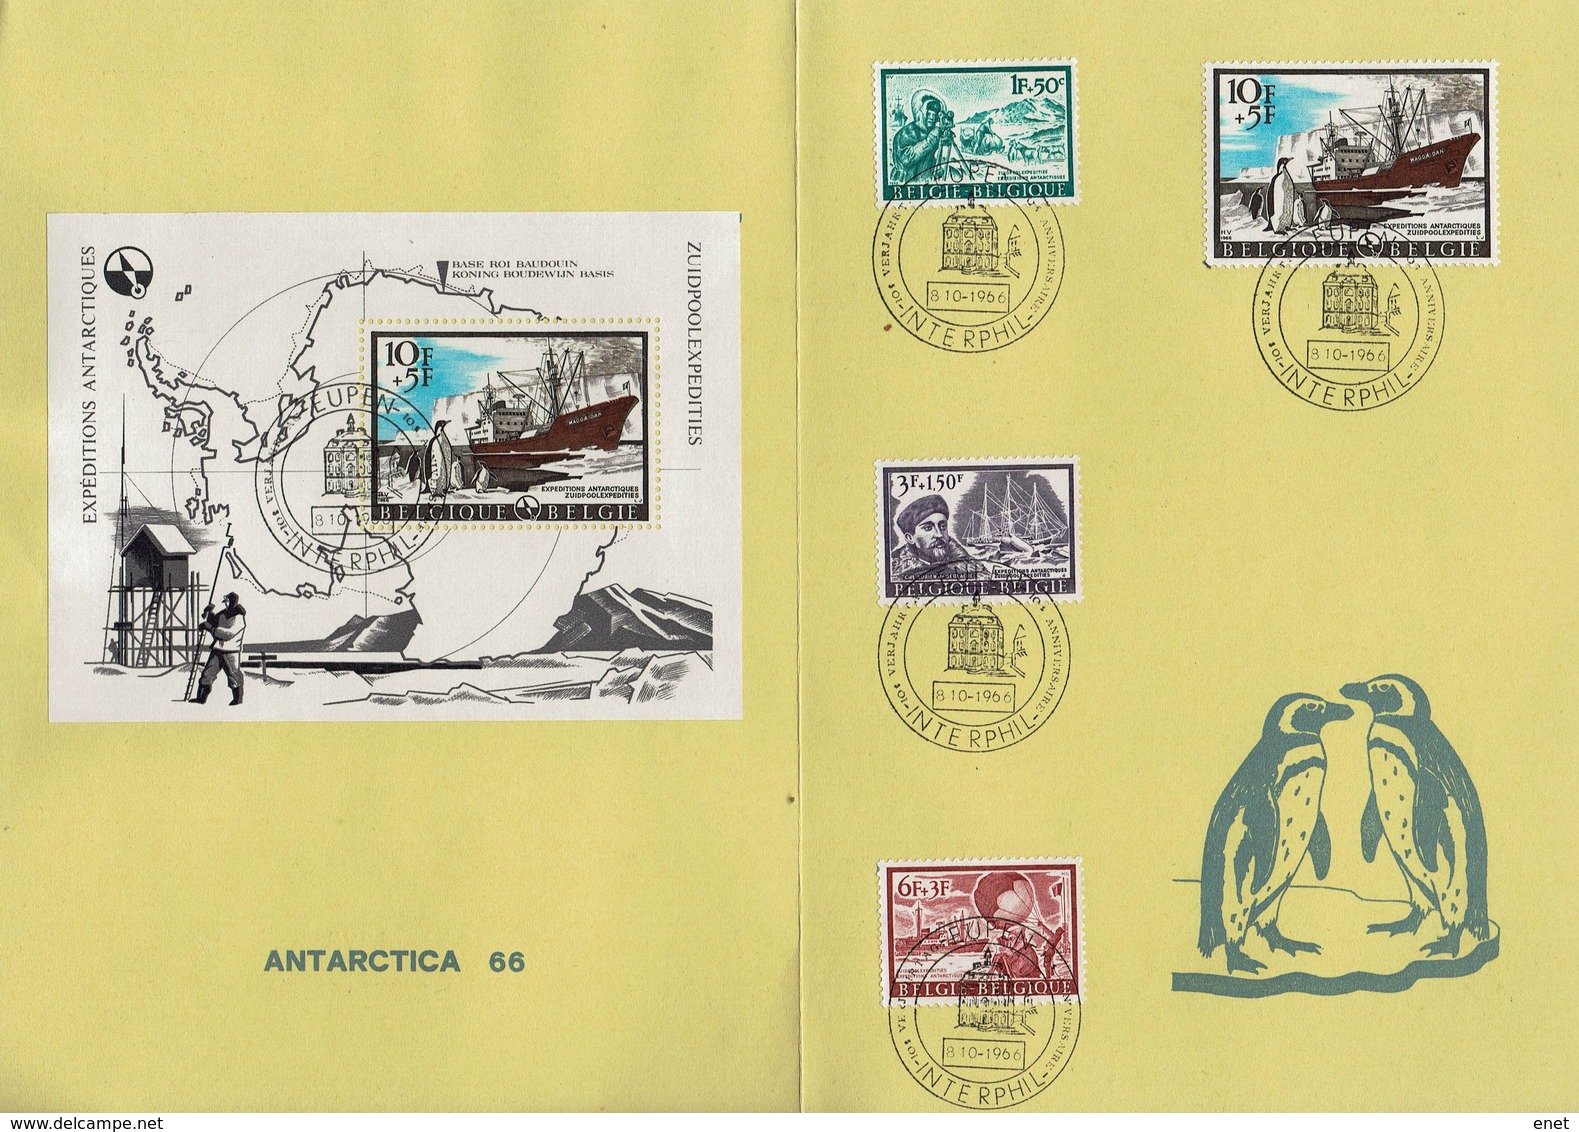 Belgie Belgien 1966 - Antarktis-Expeditionen - MiNr 1448-1451 + Block 36 - Antarktis-Expeditionen